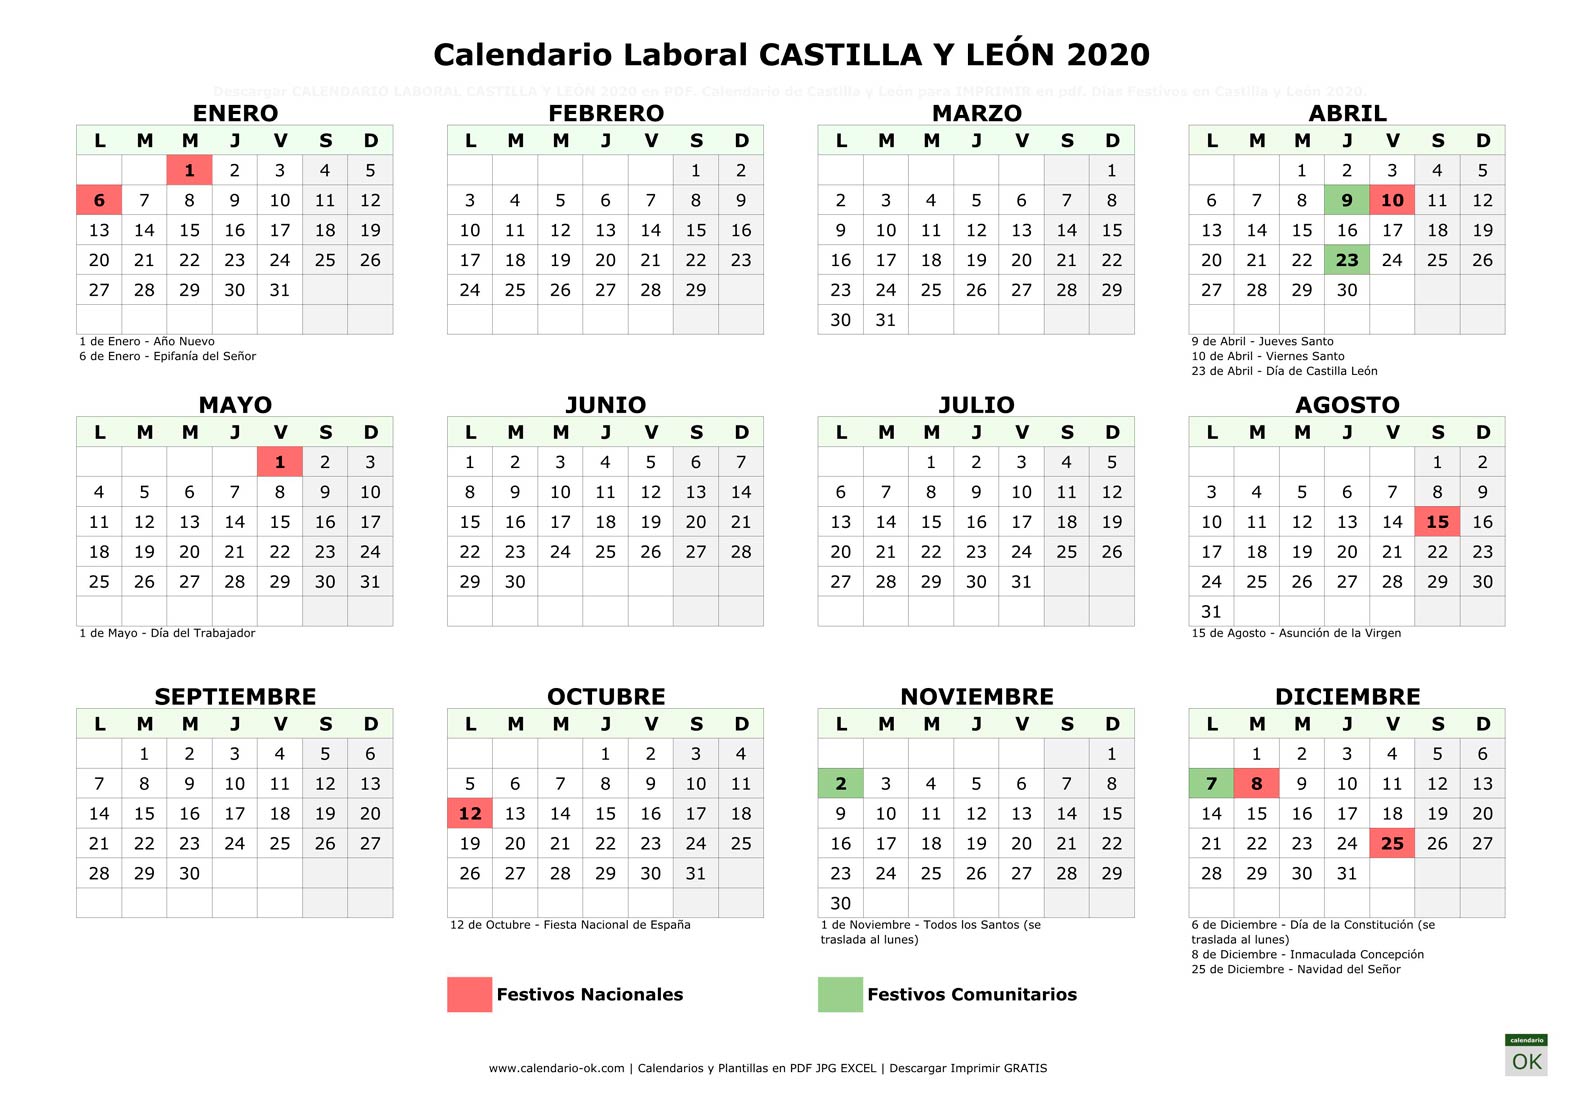 Calendario Laboral CASTILLA Y LEÓN 2020 horizontal